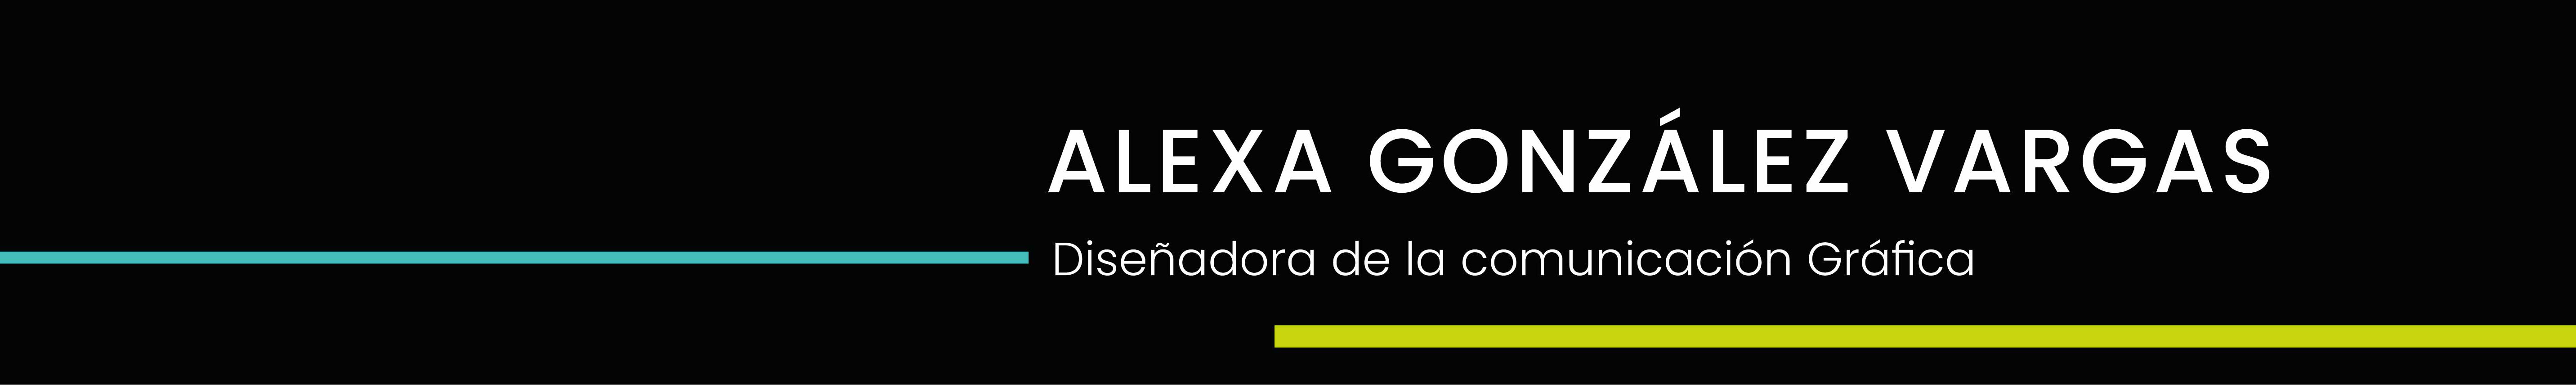 Alexa González's profile banner